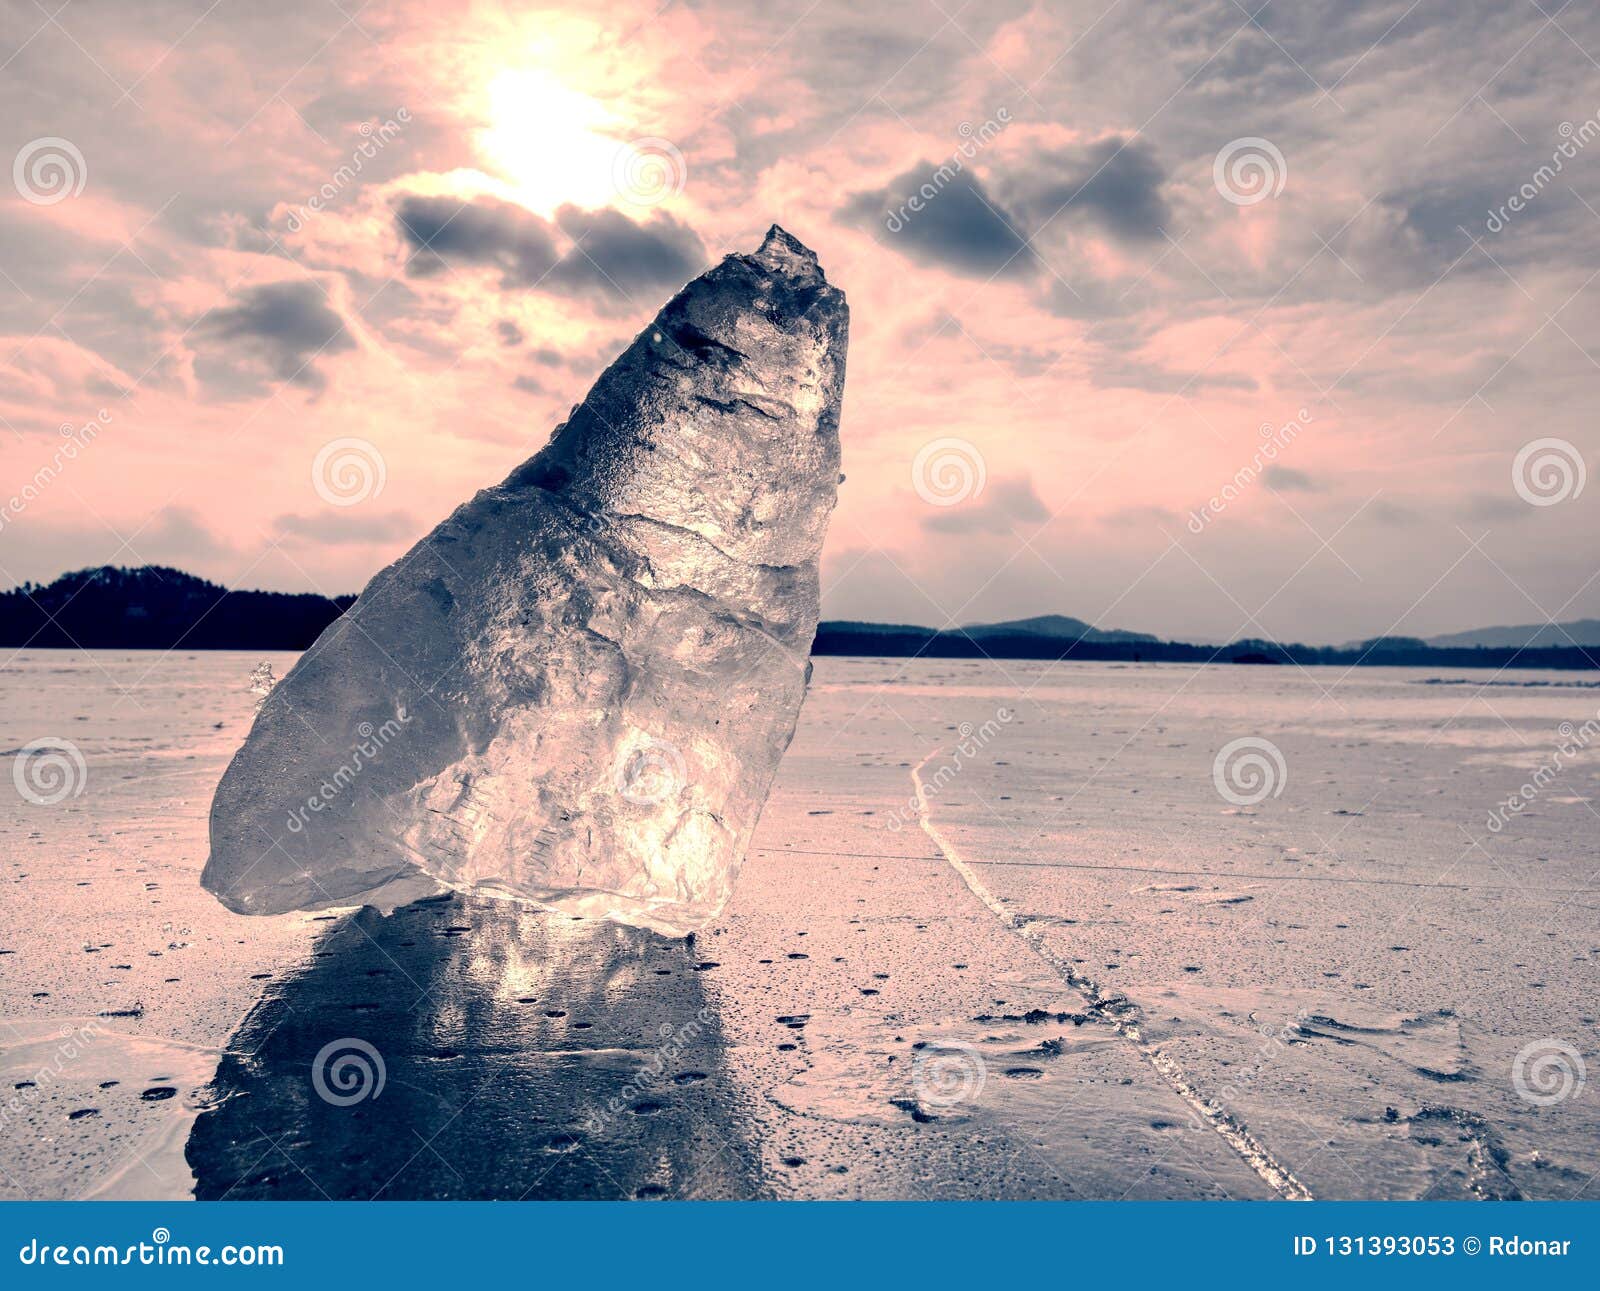 Ice Breake. Floe on Frozen Lake with Sunset Sky Background Stock Image ...